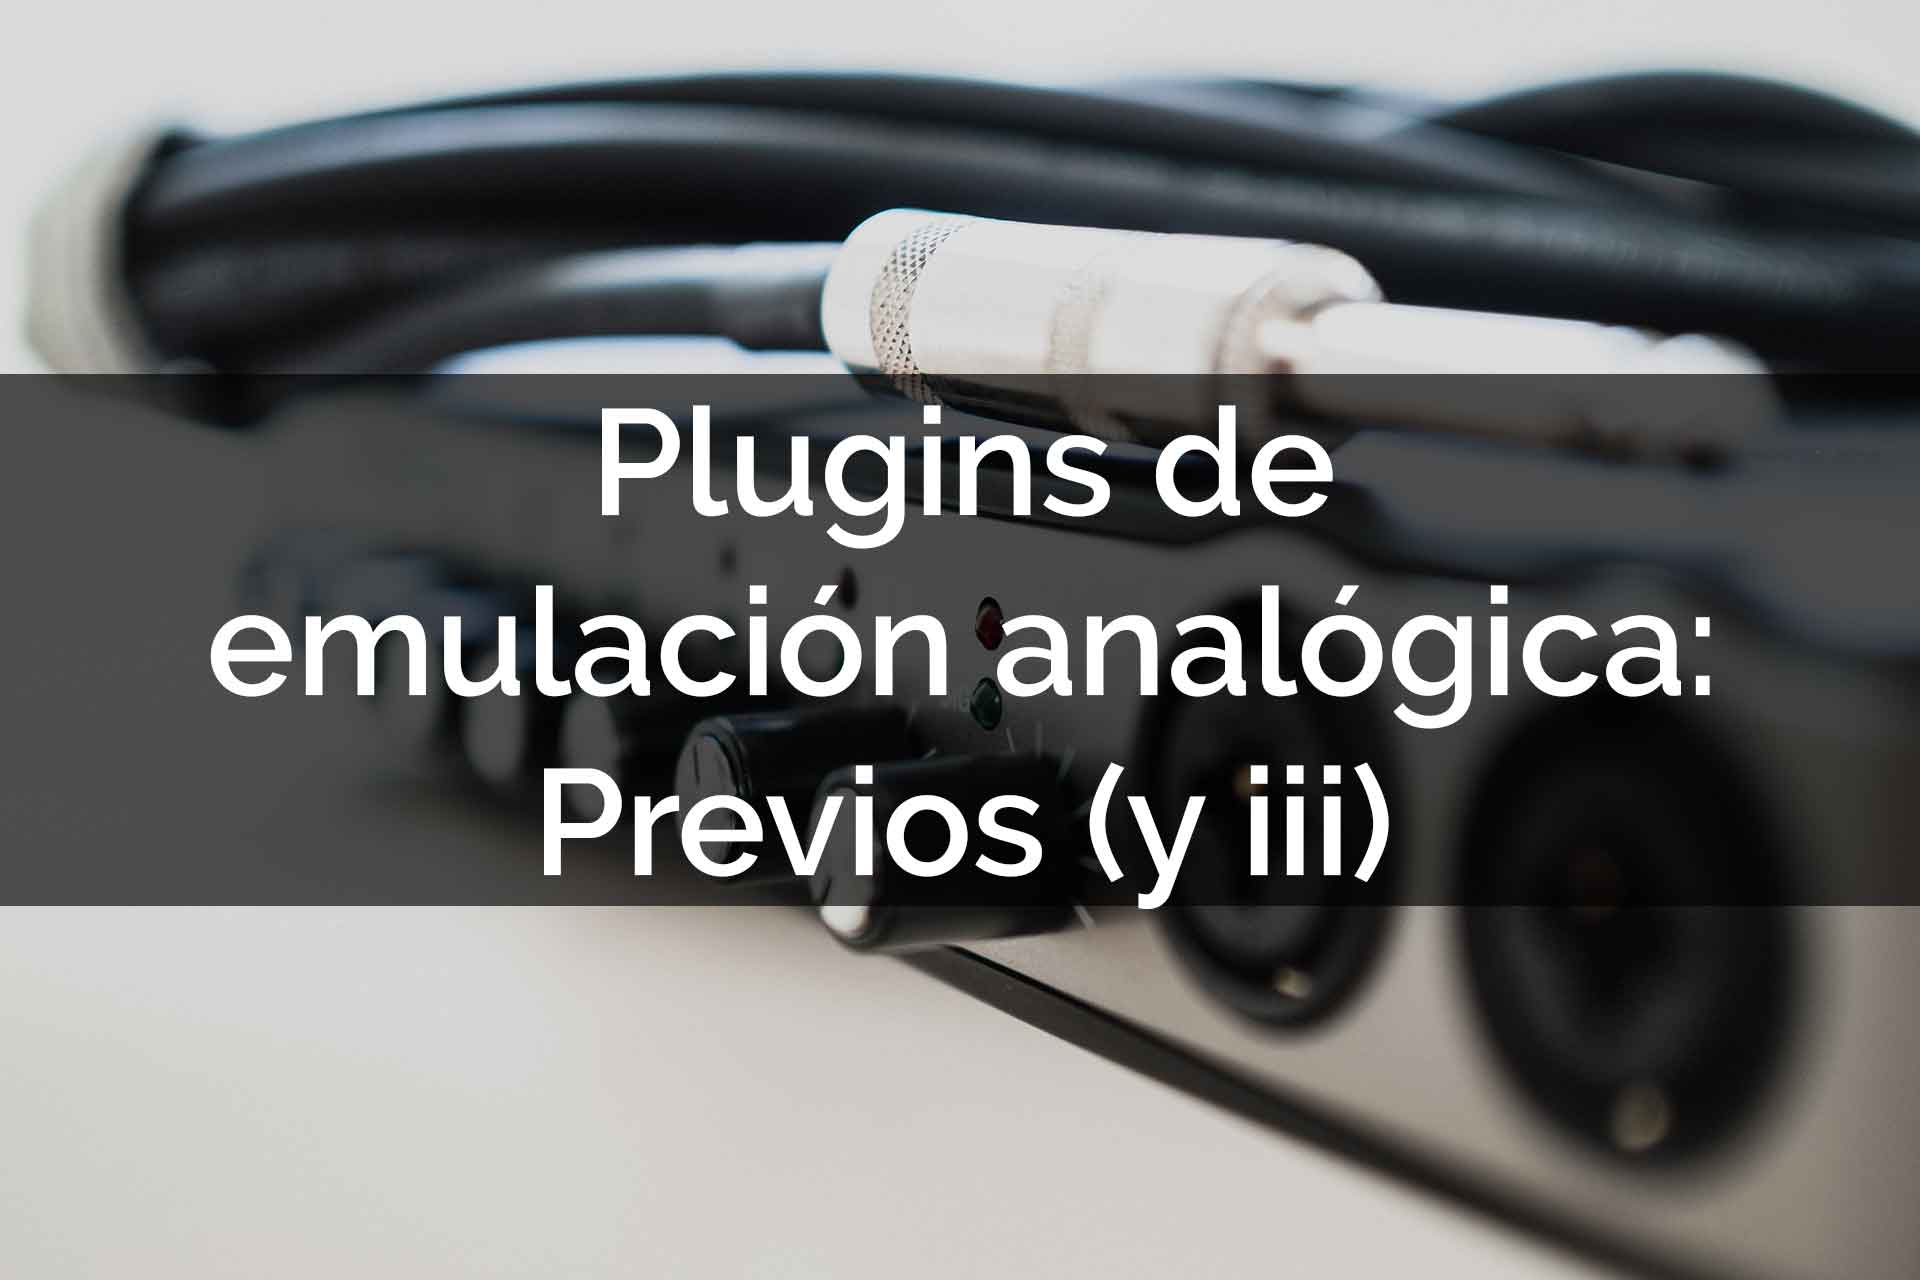 PLUGINS DE EMULACION ANALOGICA PREVIOS Javhastudios